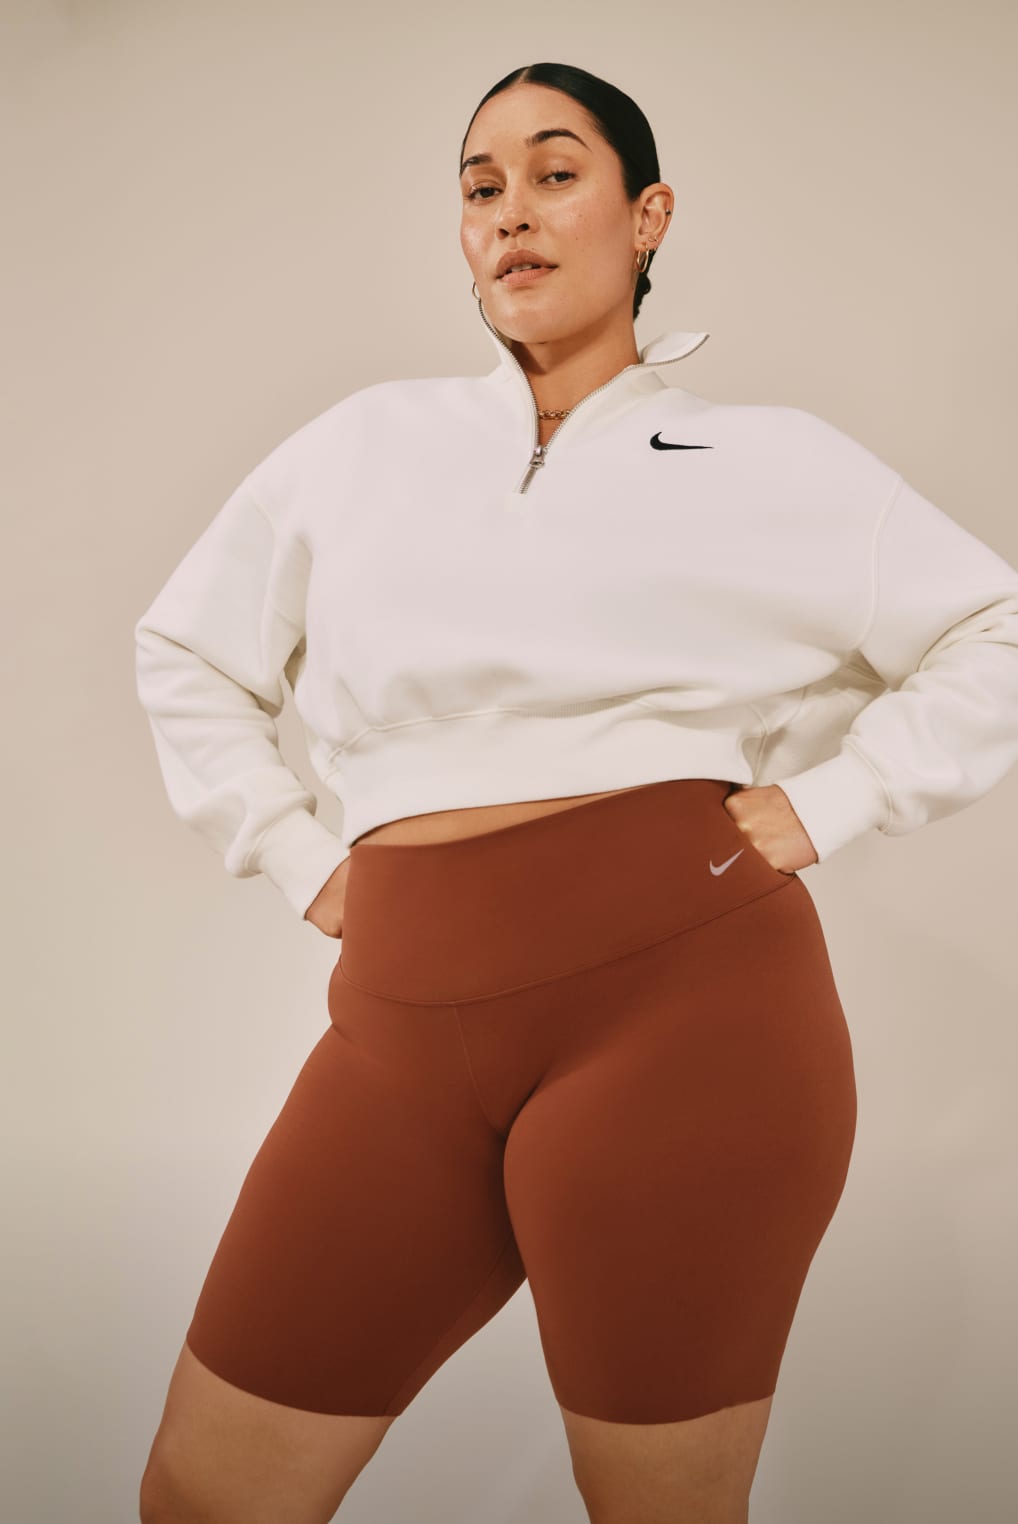 Womens Nike Pro Plus Size Clothing.